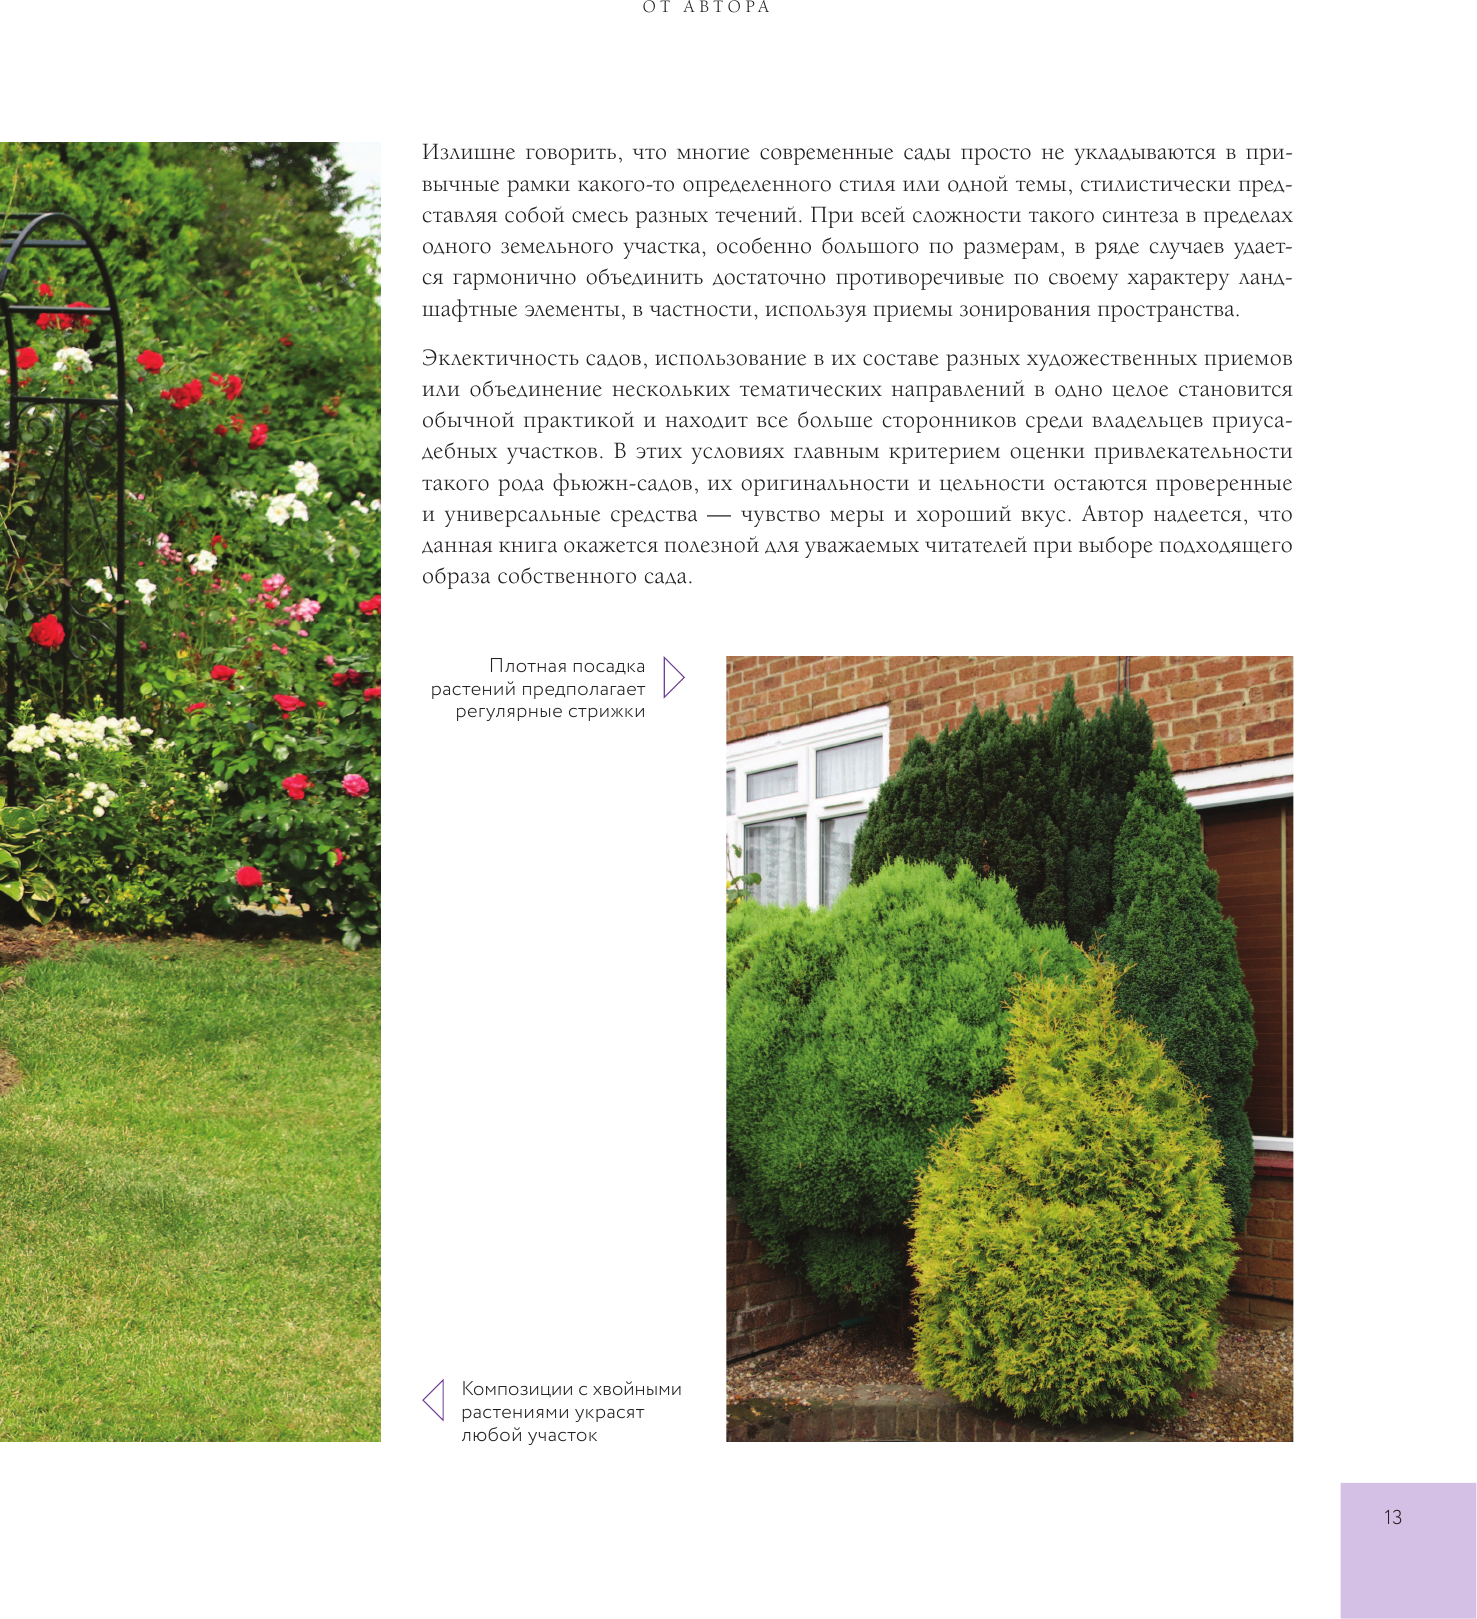 Стильный сад. От вдохновения - к идее, от образа - к проекту. (издание дополненное и переработанное) - фото №17